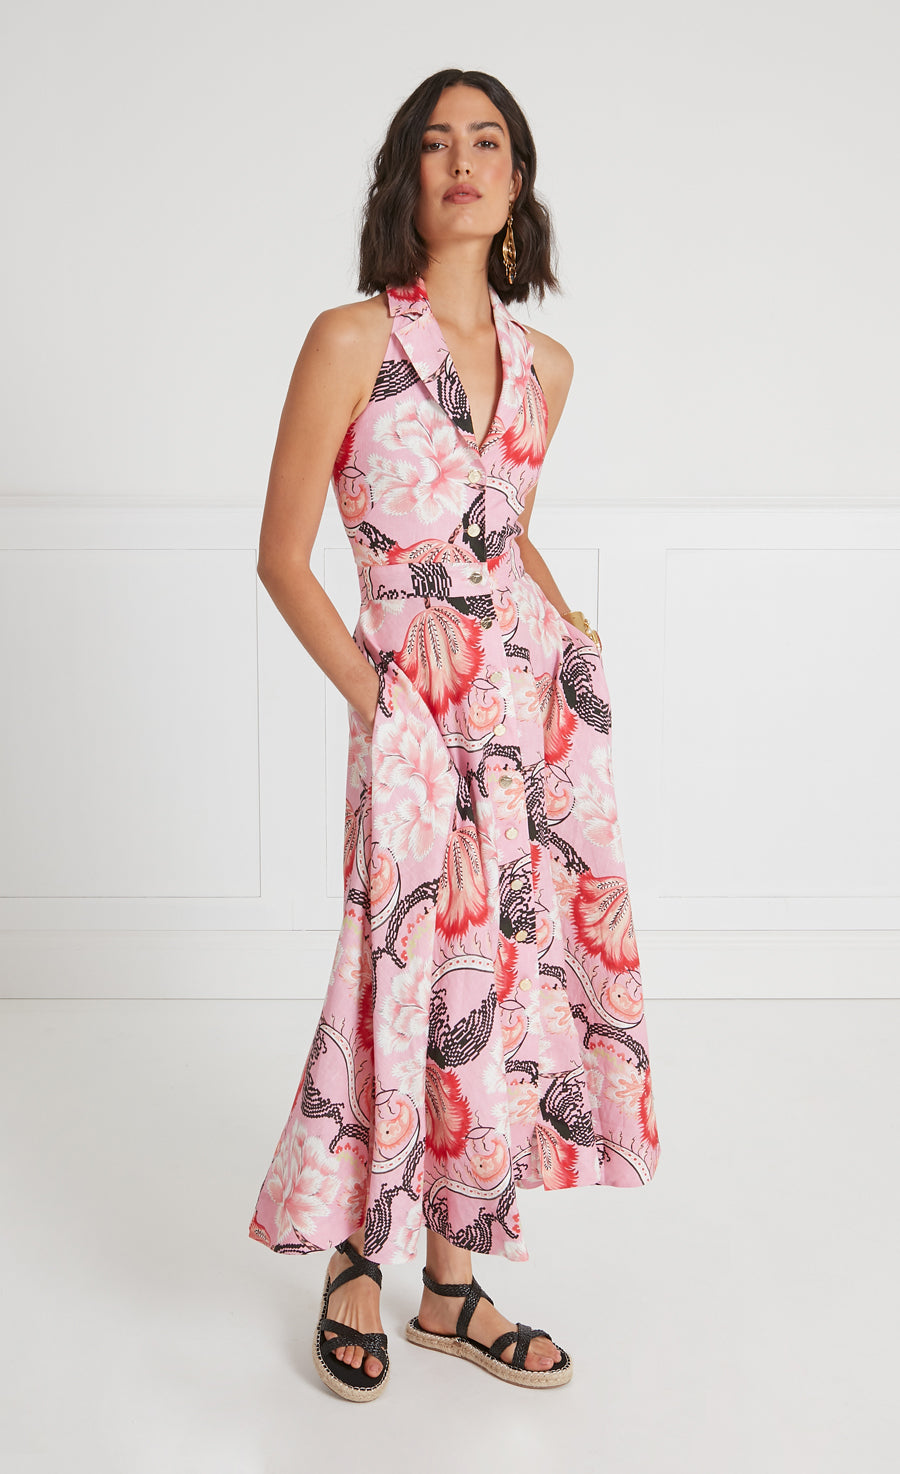 Olive Print Halter Dress - Indian Pink